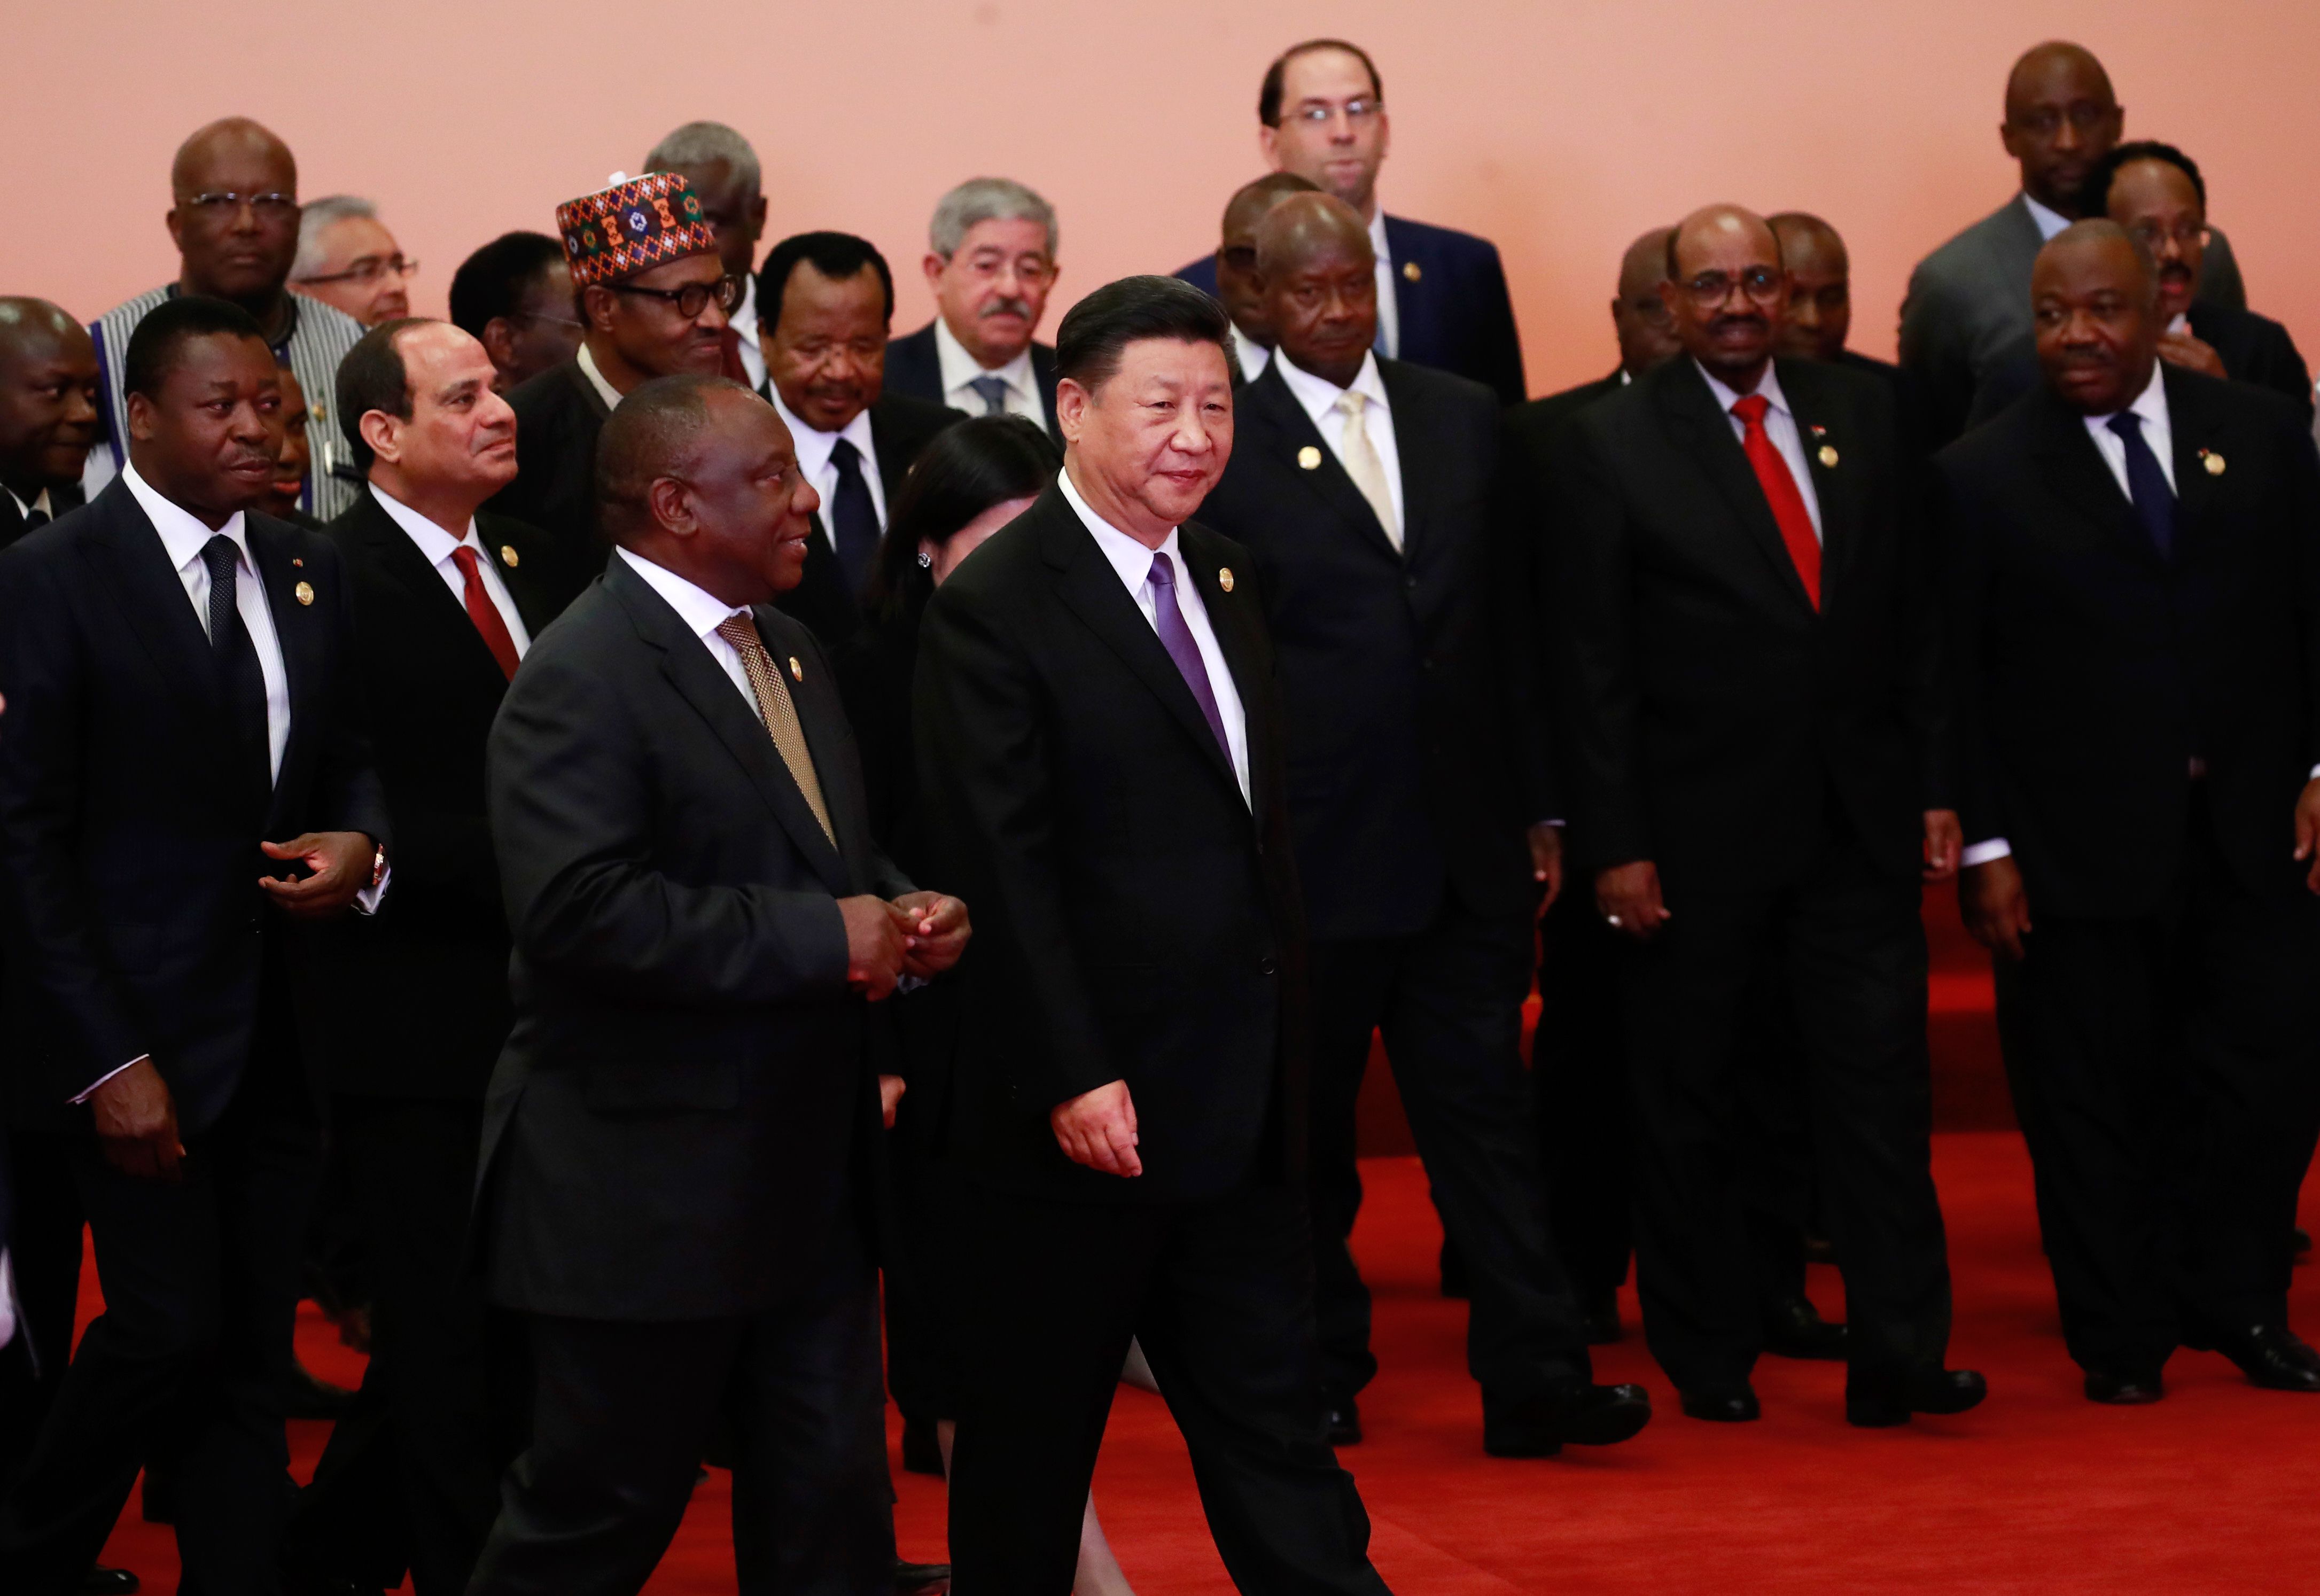 زعماء قمة الصين أفريقيا فى بكين